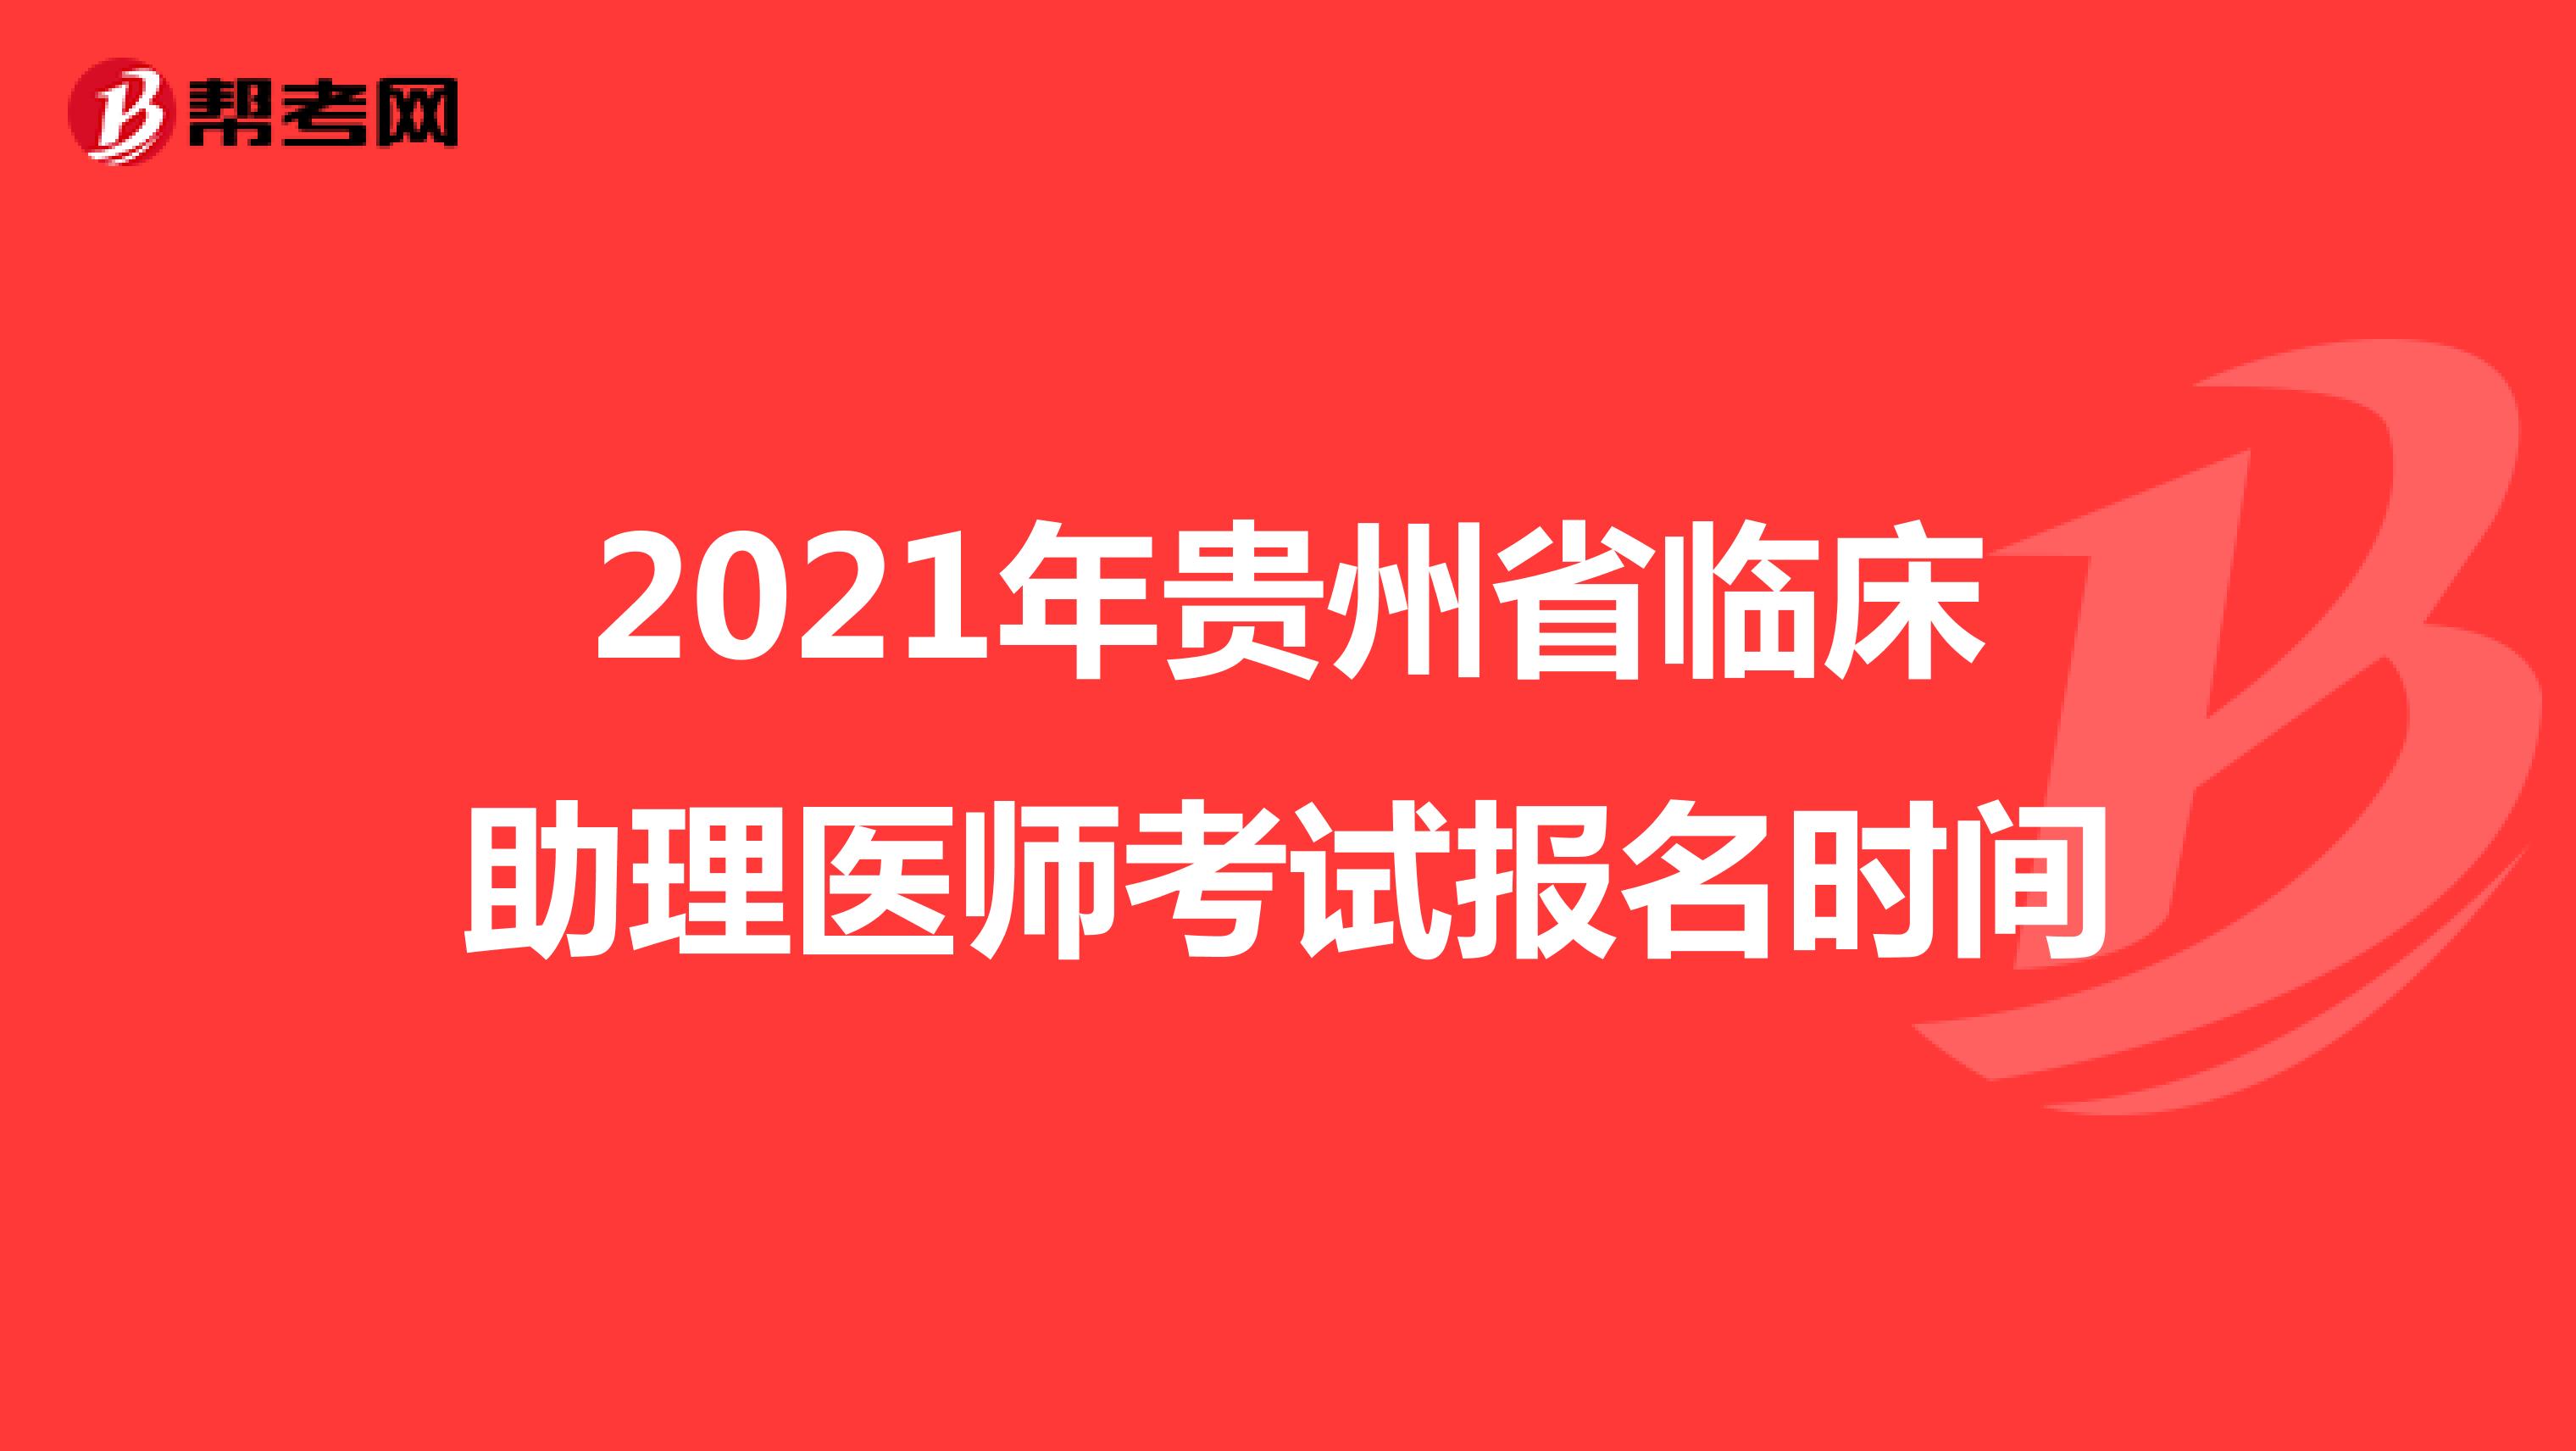 2021年贵州省临床助理医师考试报名时间